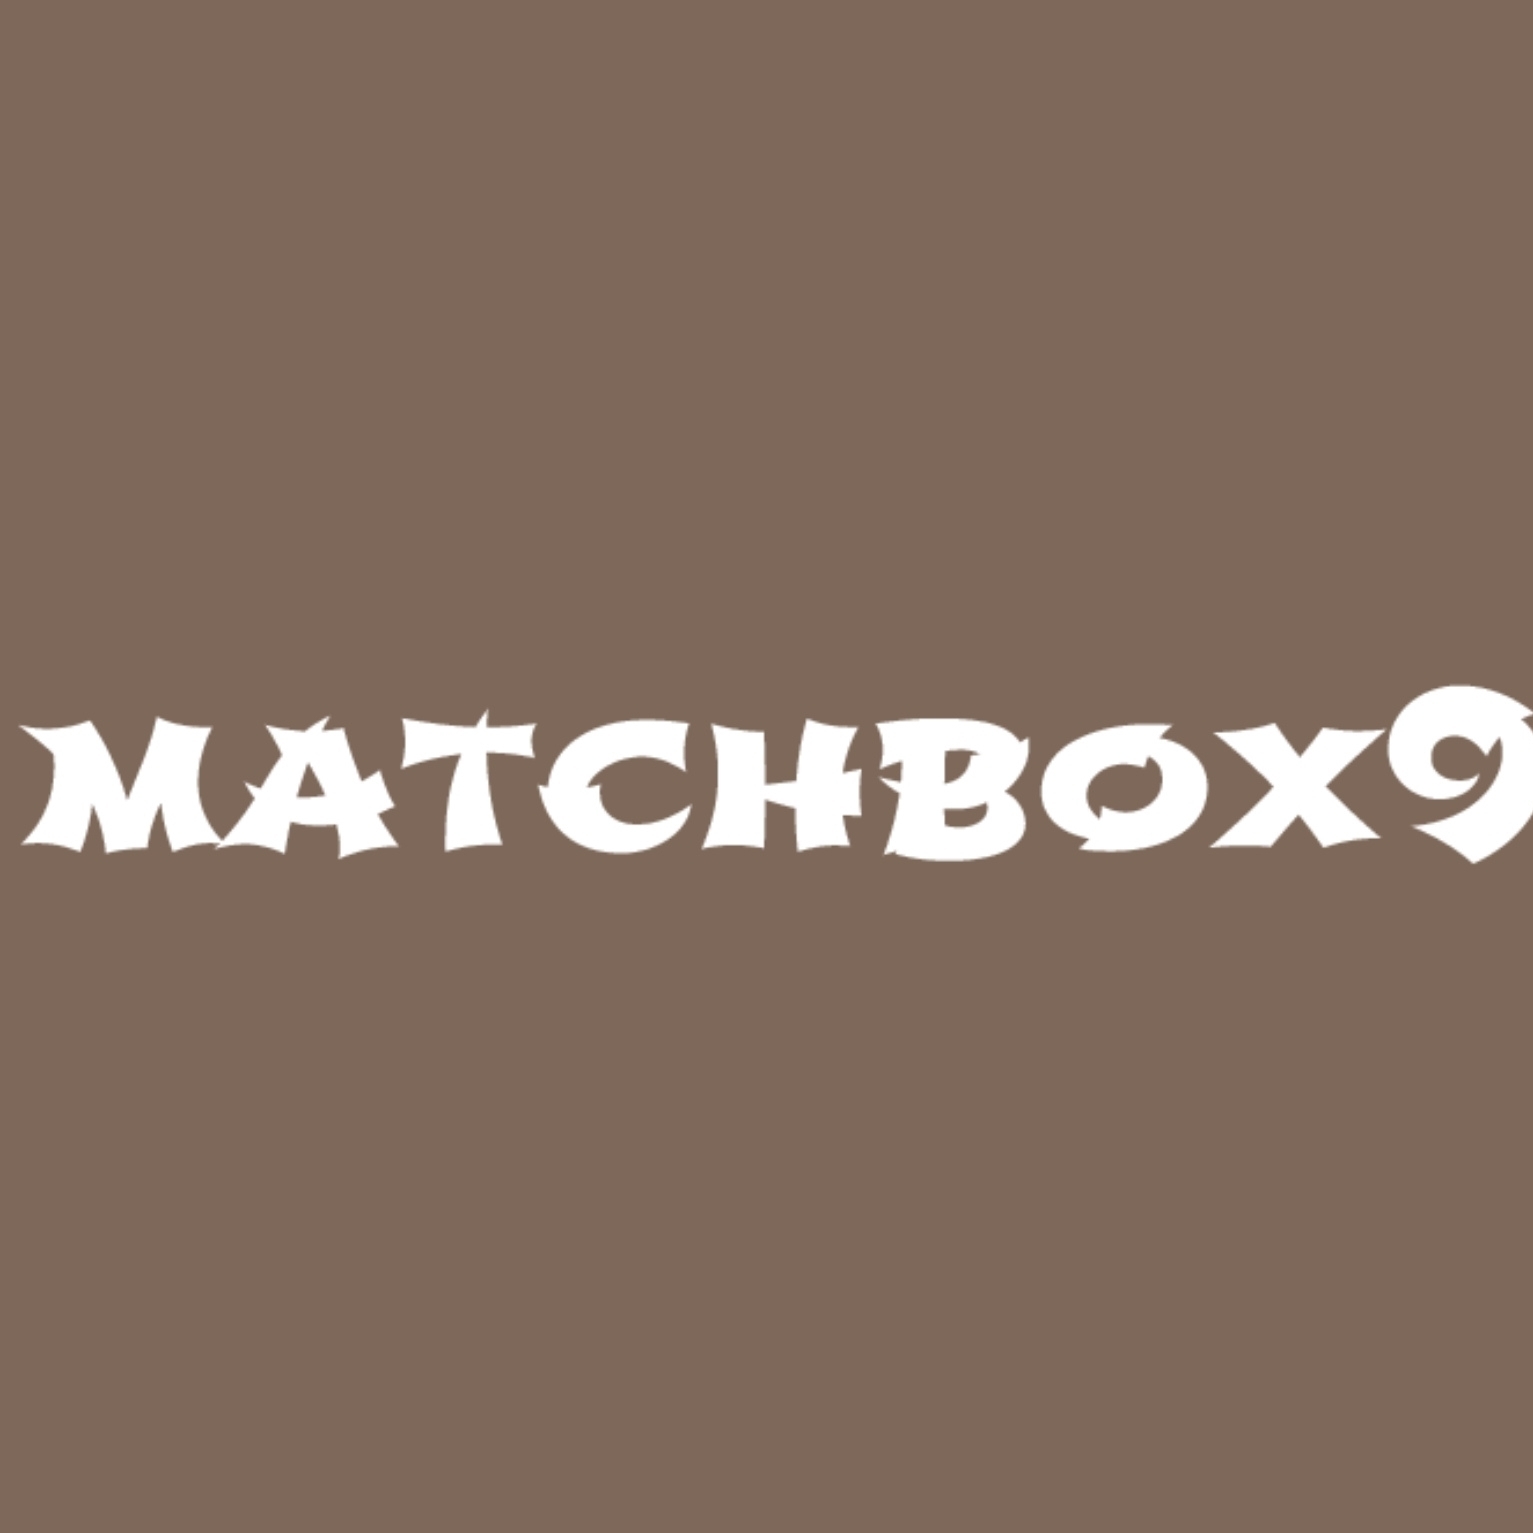 matchbox9